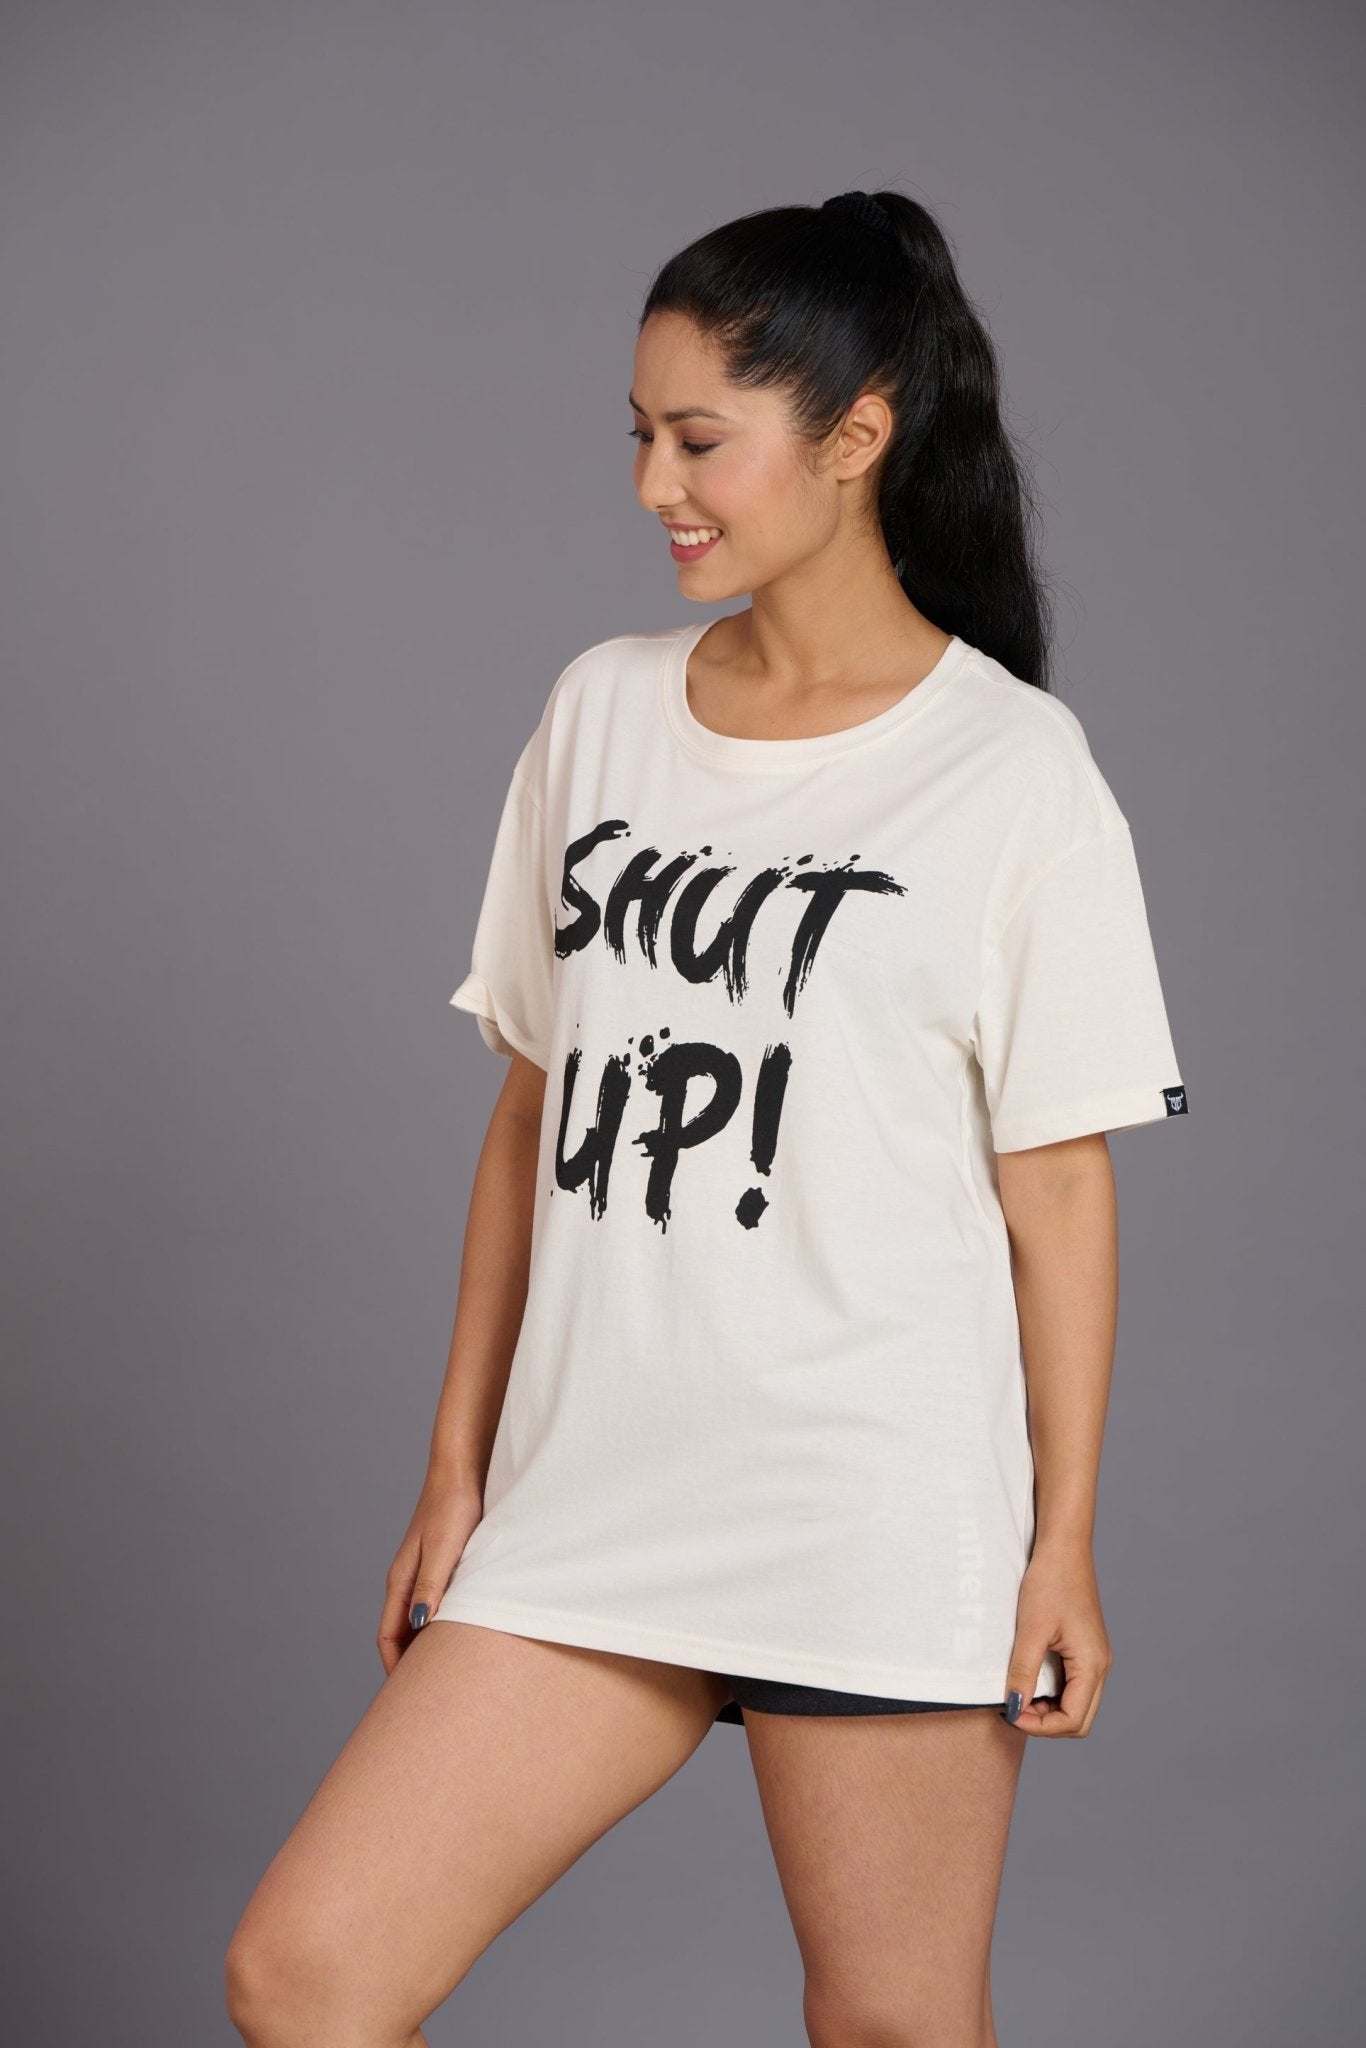 Shut Up Printed Ivory Oversized T-Shirt for Women - Go Devil